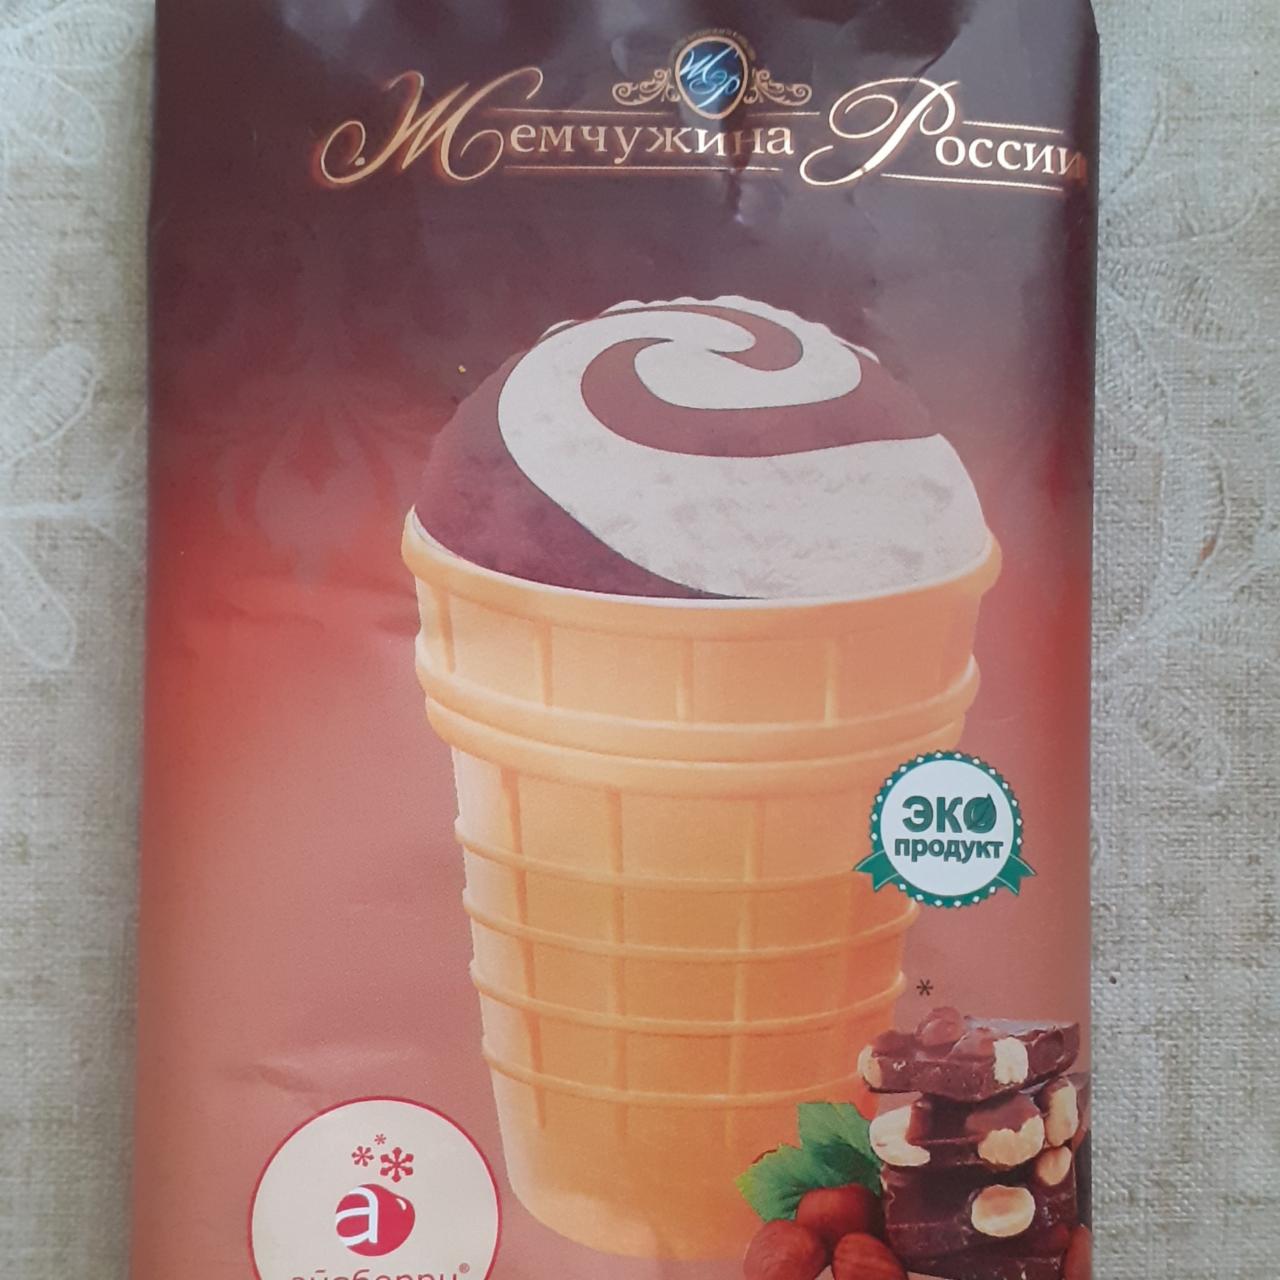 Фото - мороженое двухслойное сливочное шоколадное и с ароматом фундука в вафельном стаканчике Жемчужина россии